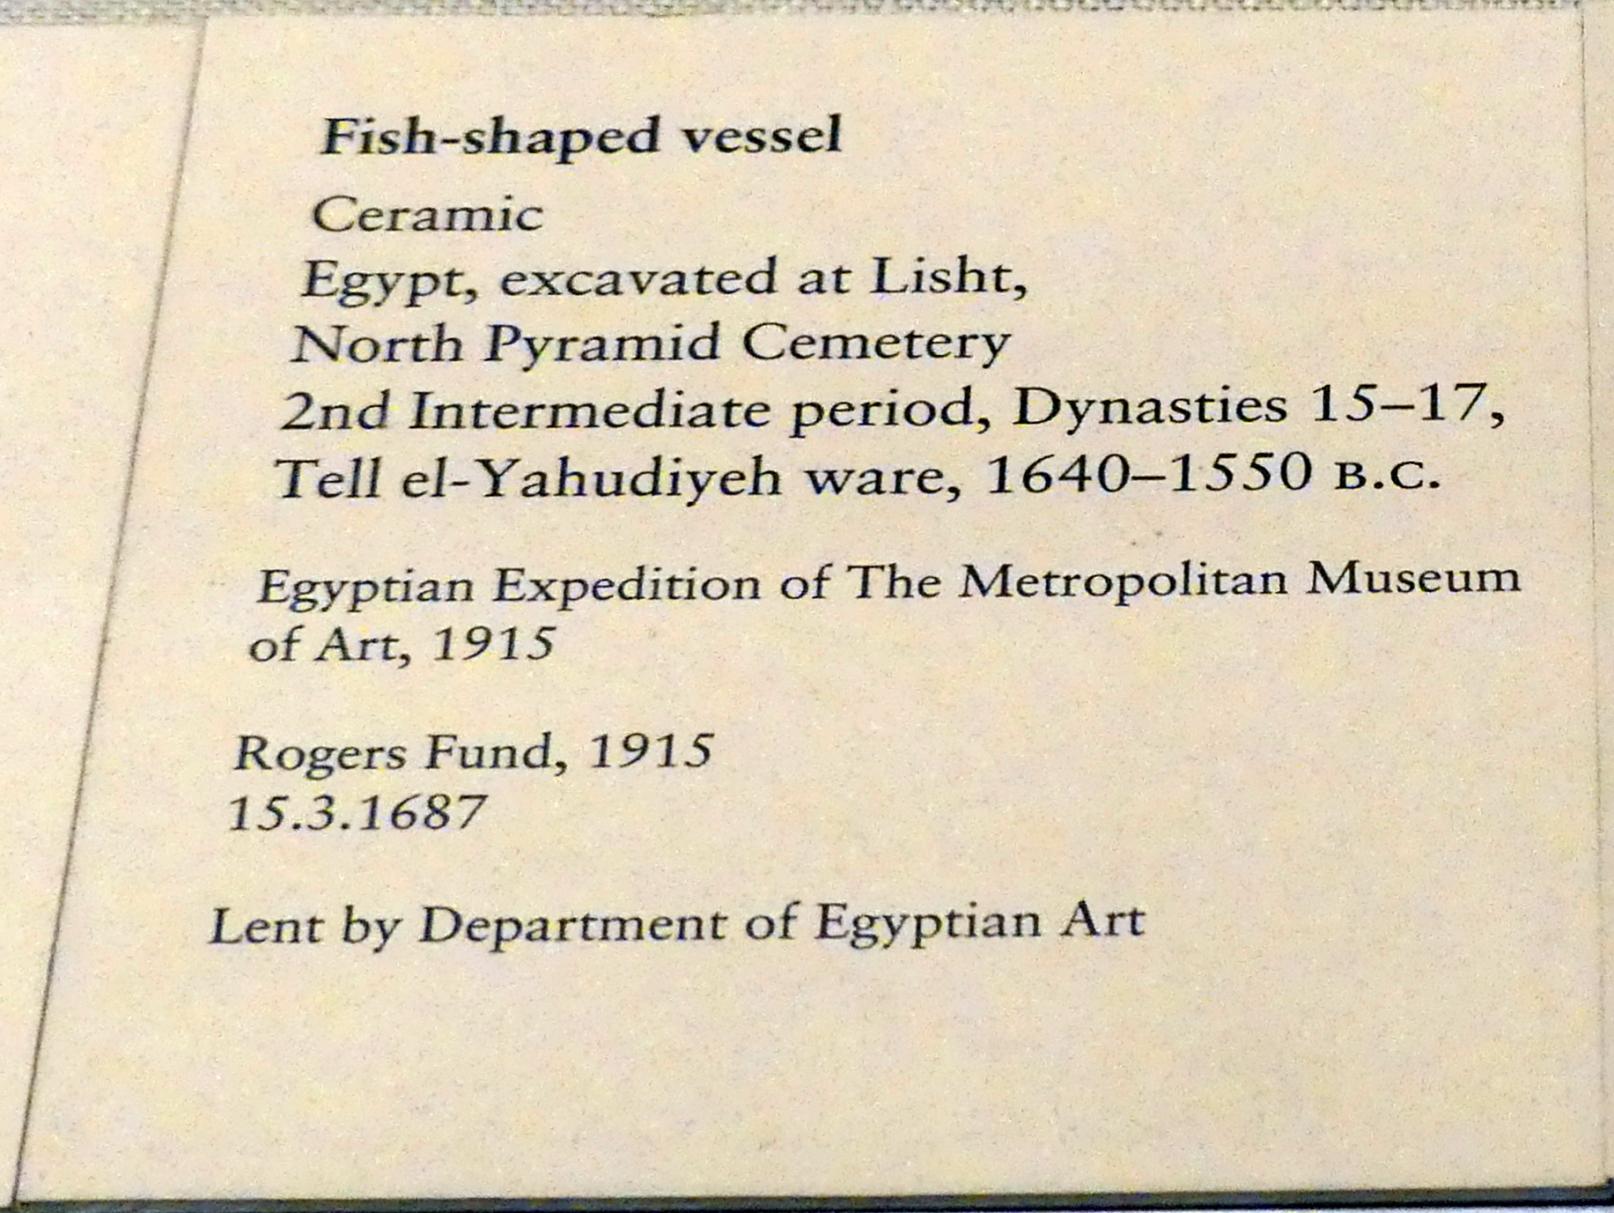 Gefäß in Form eines Fisches, 2. Zwischenzeit, Undatiert, 1640 - 1550 v. Chr., Bild 2/2